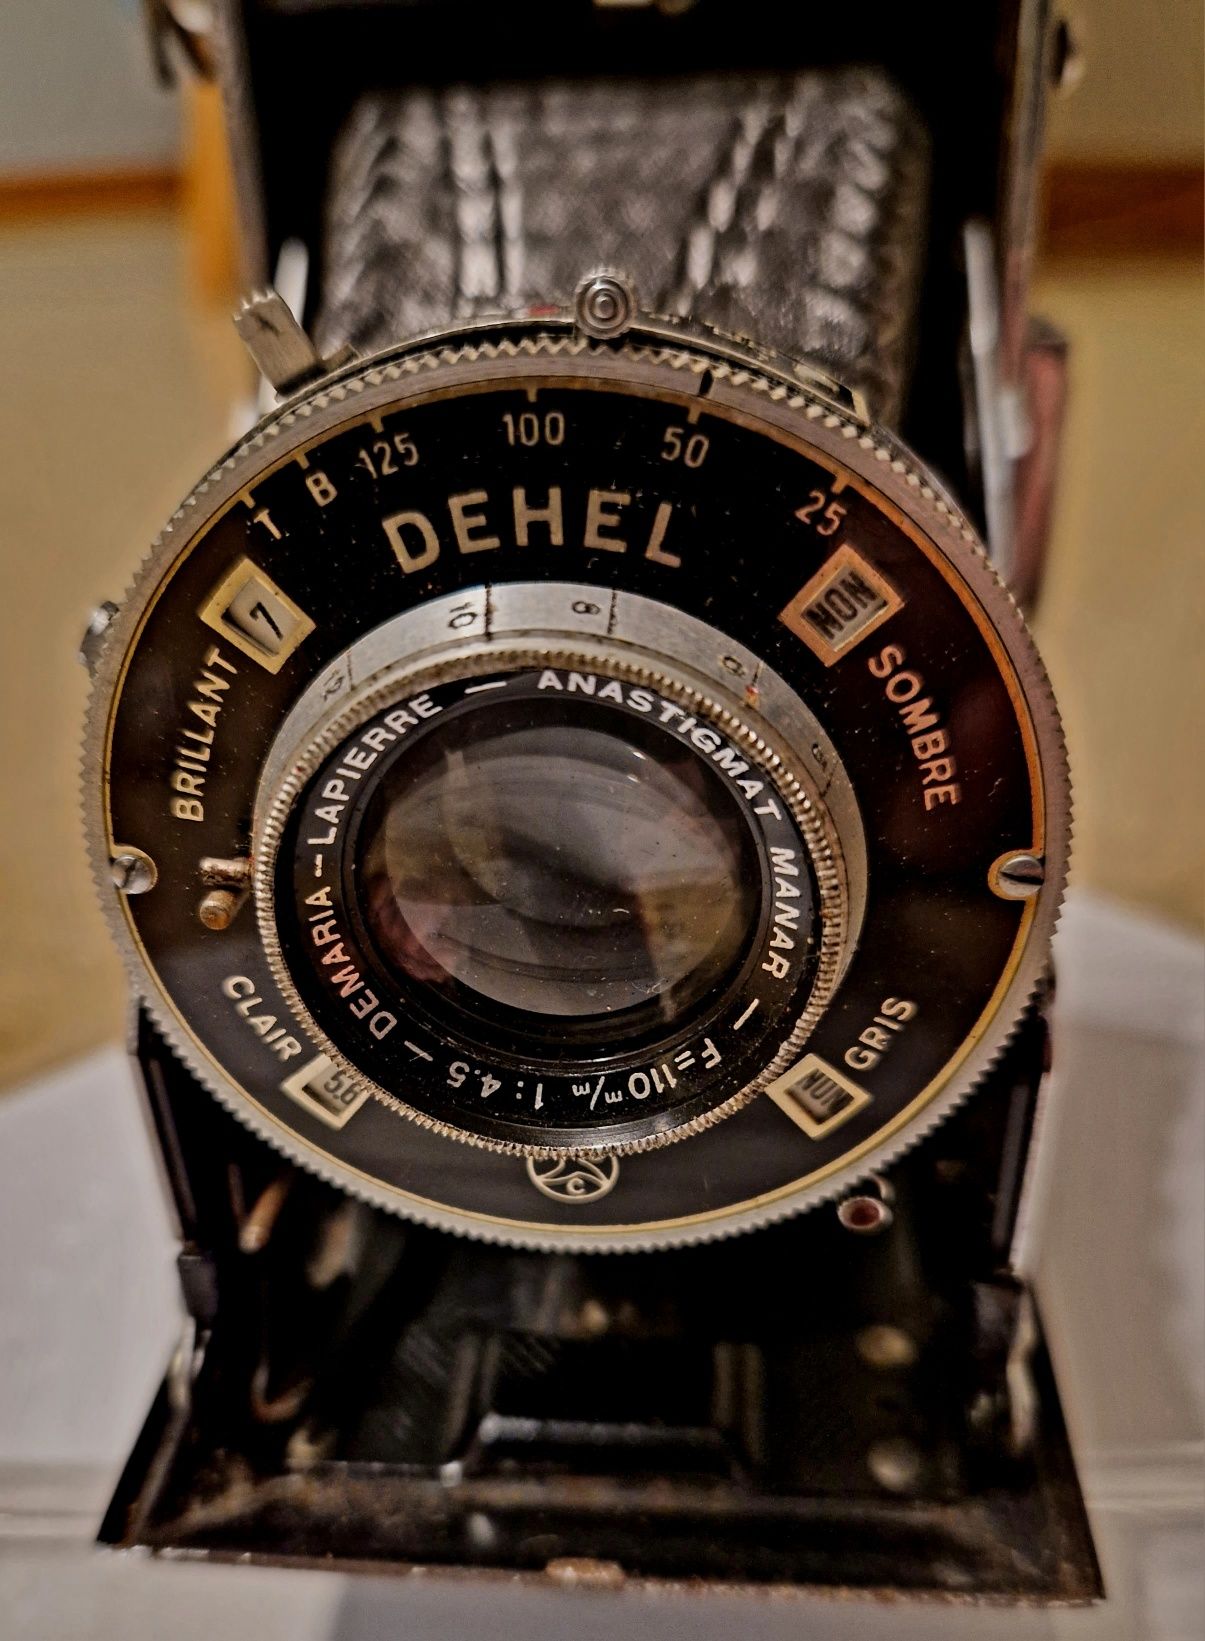 Máquina Fotográfica de Fole Dehel